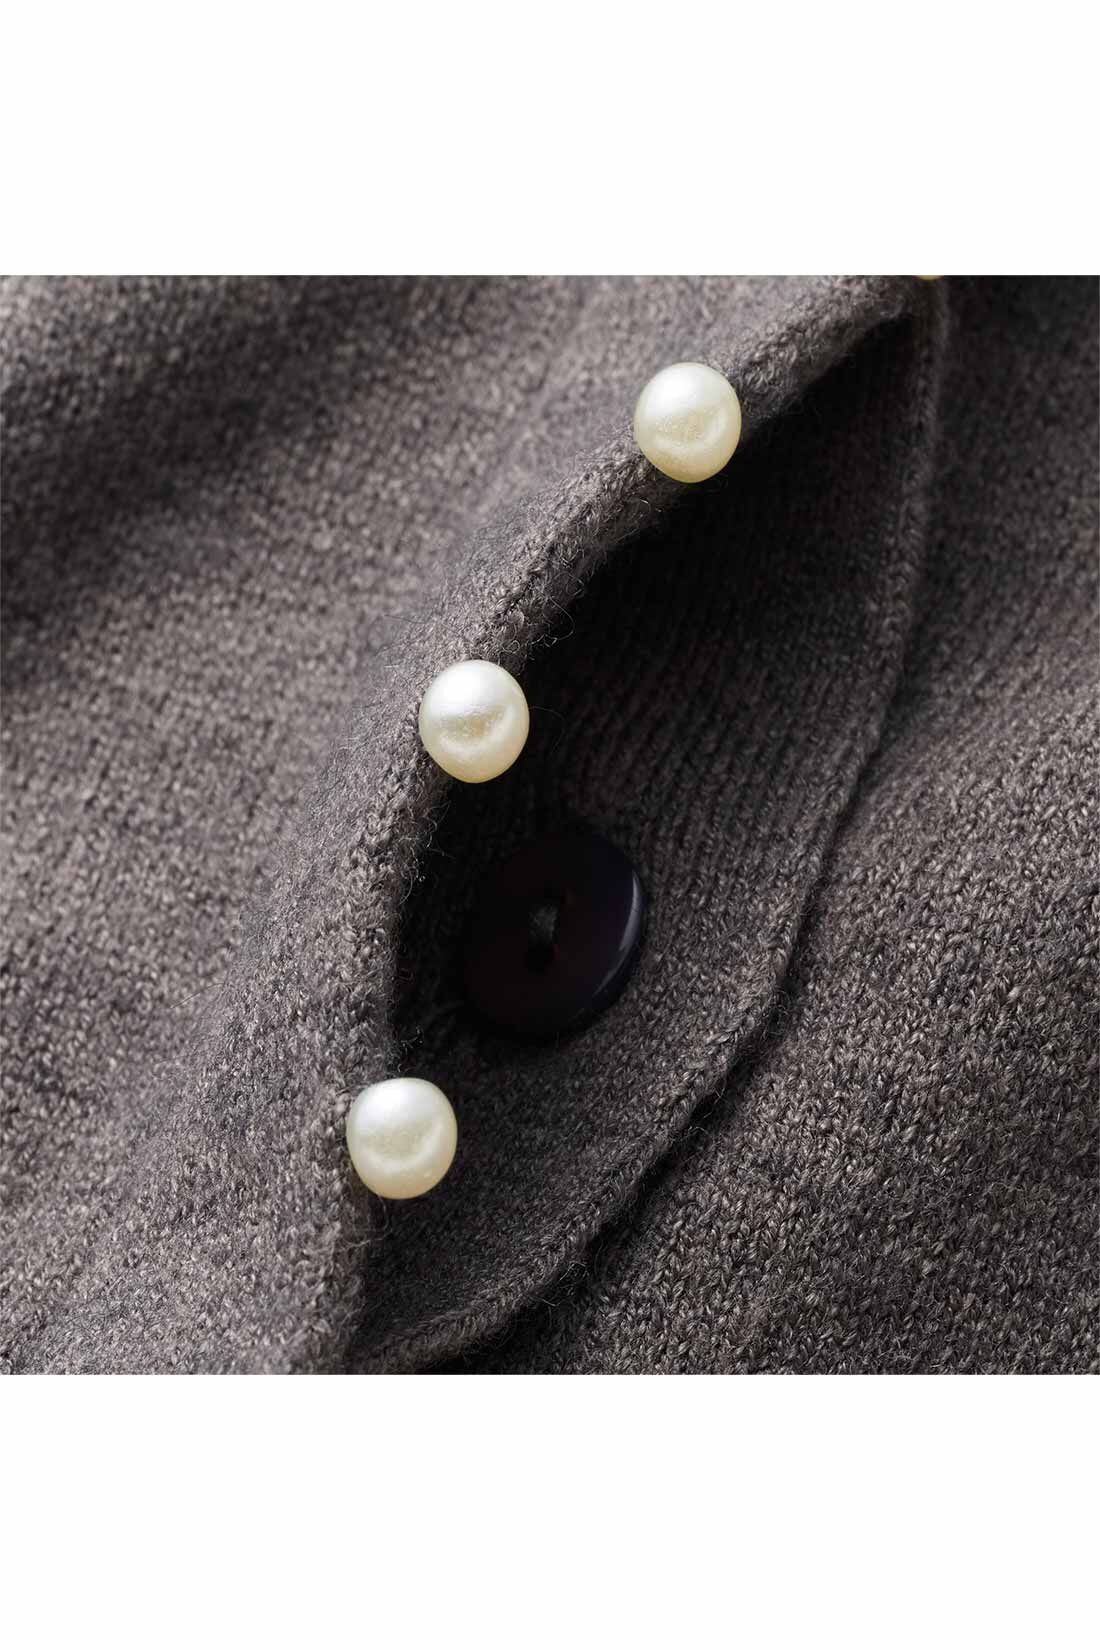 IEDIT|IEDIT[イディット]　アクセサリーみたいなミニパールが上品な 柄編み袖のカーディガン〈ボルドー〉|フロントボタンを隠した比翼仕立て。パールの飾りが引き立つデザインに。 ※お届けするカラーとは異なります。